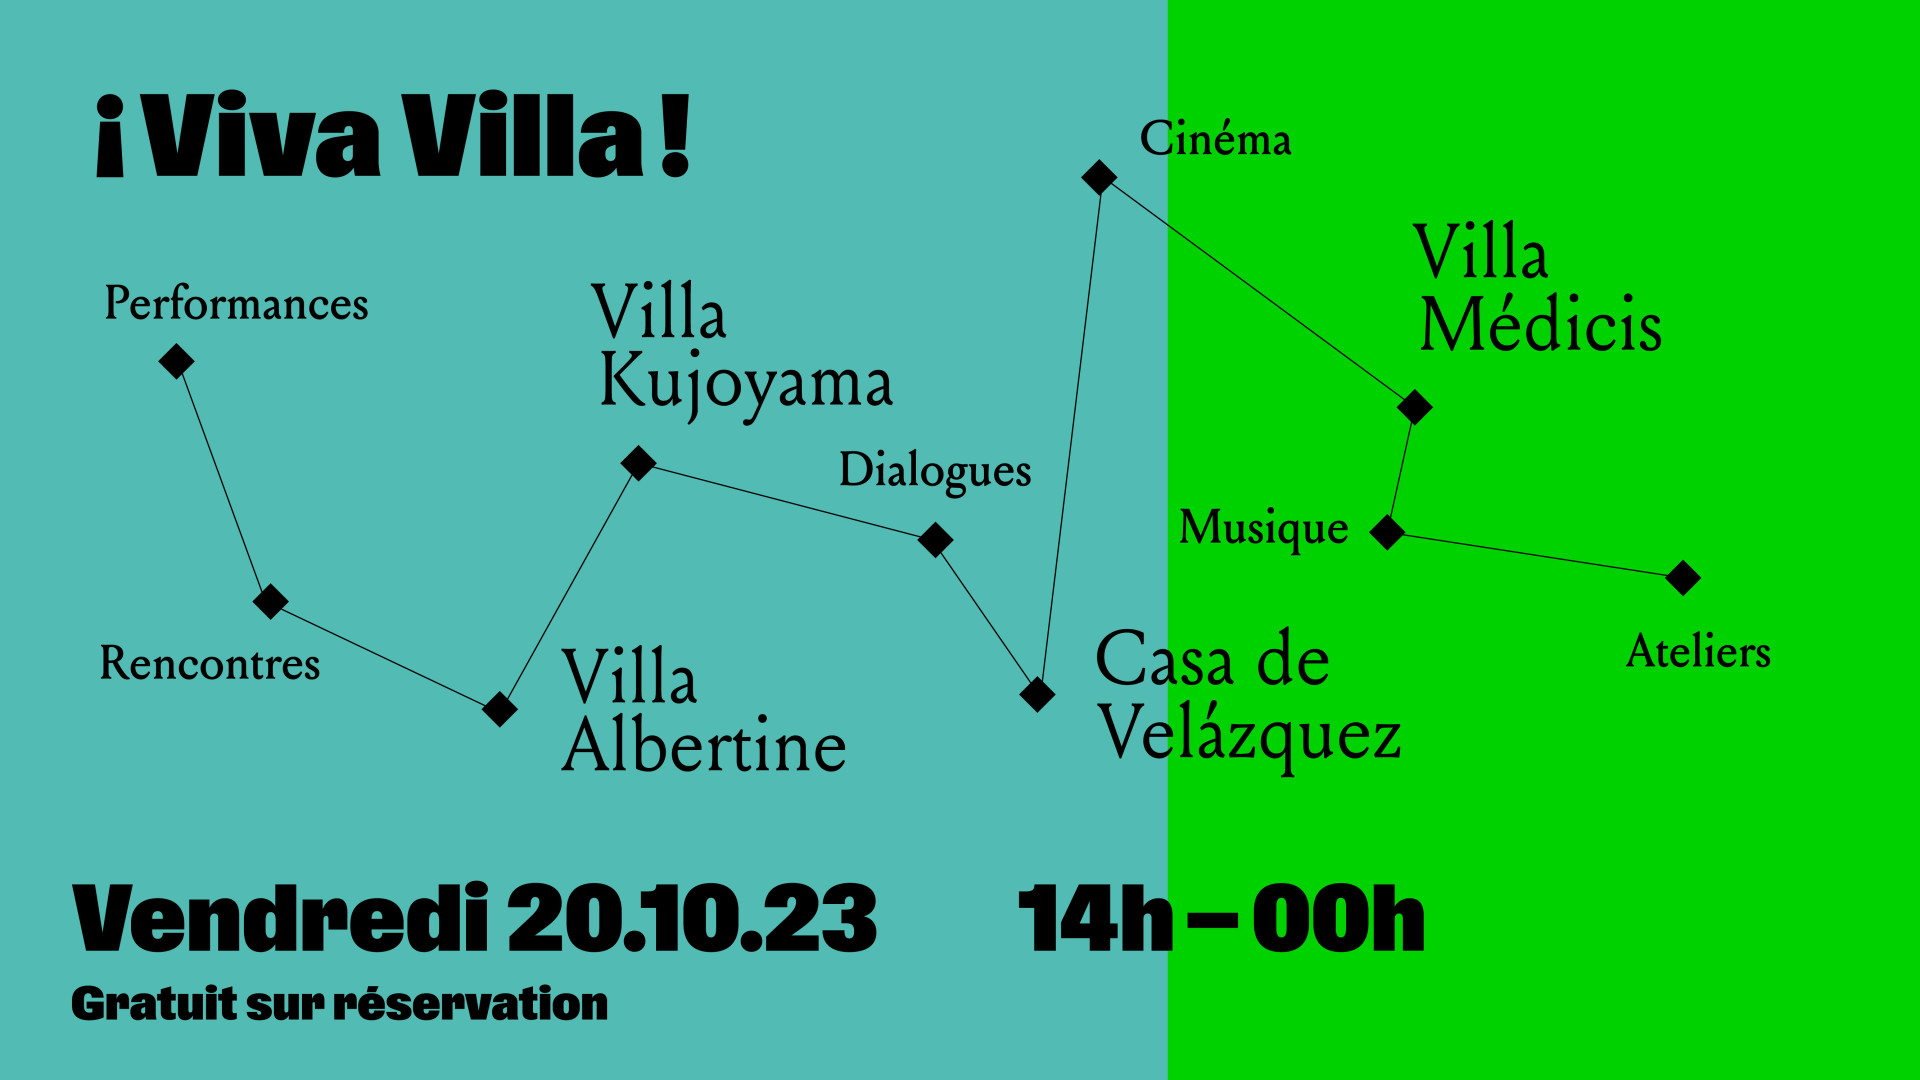 ¡Viva Villa!